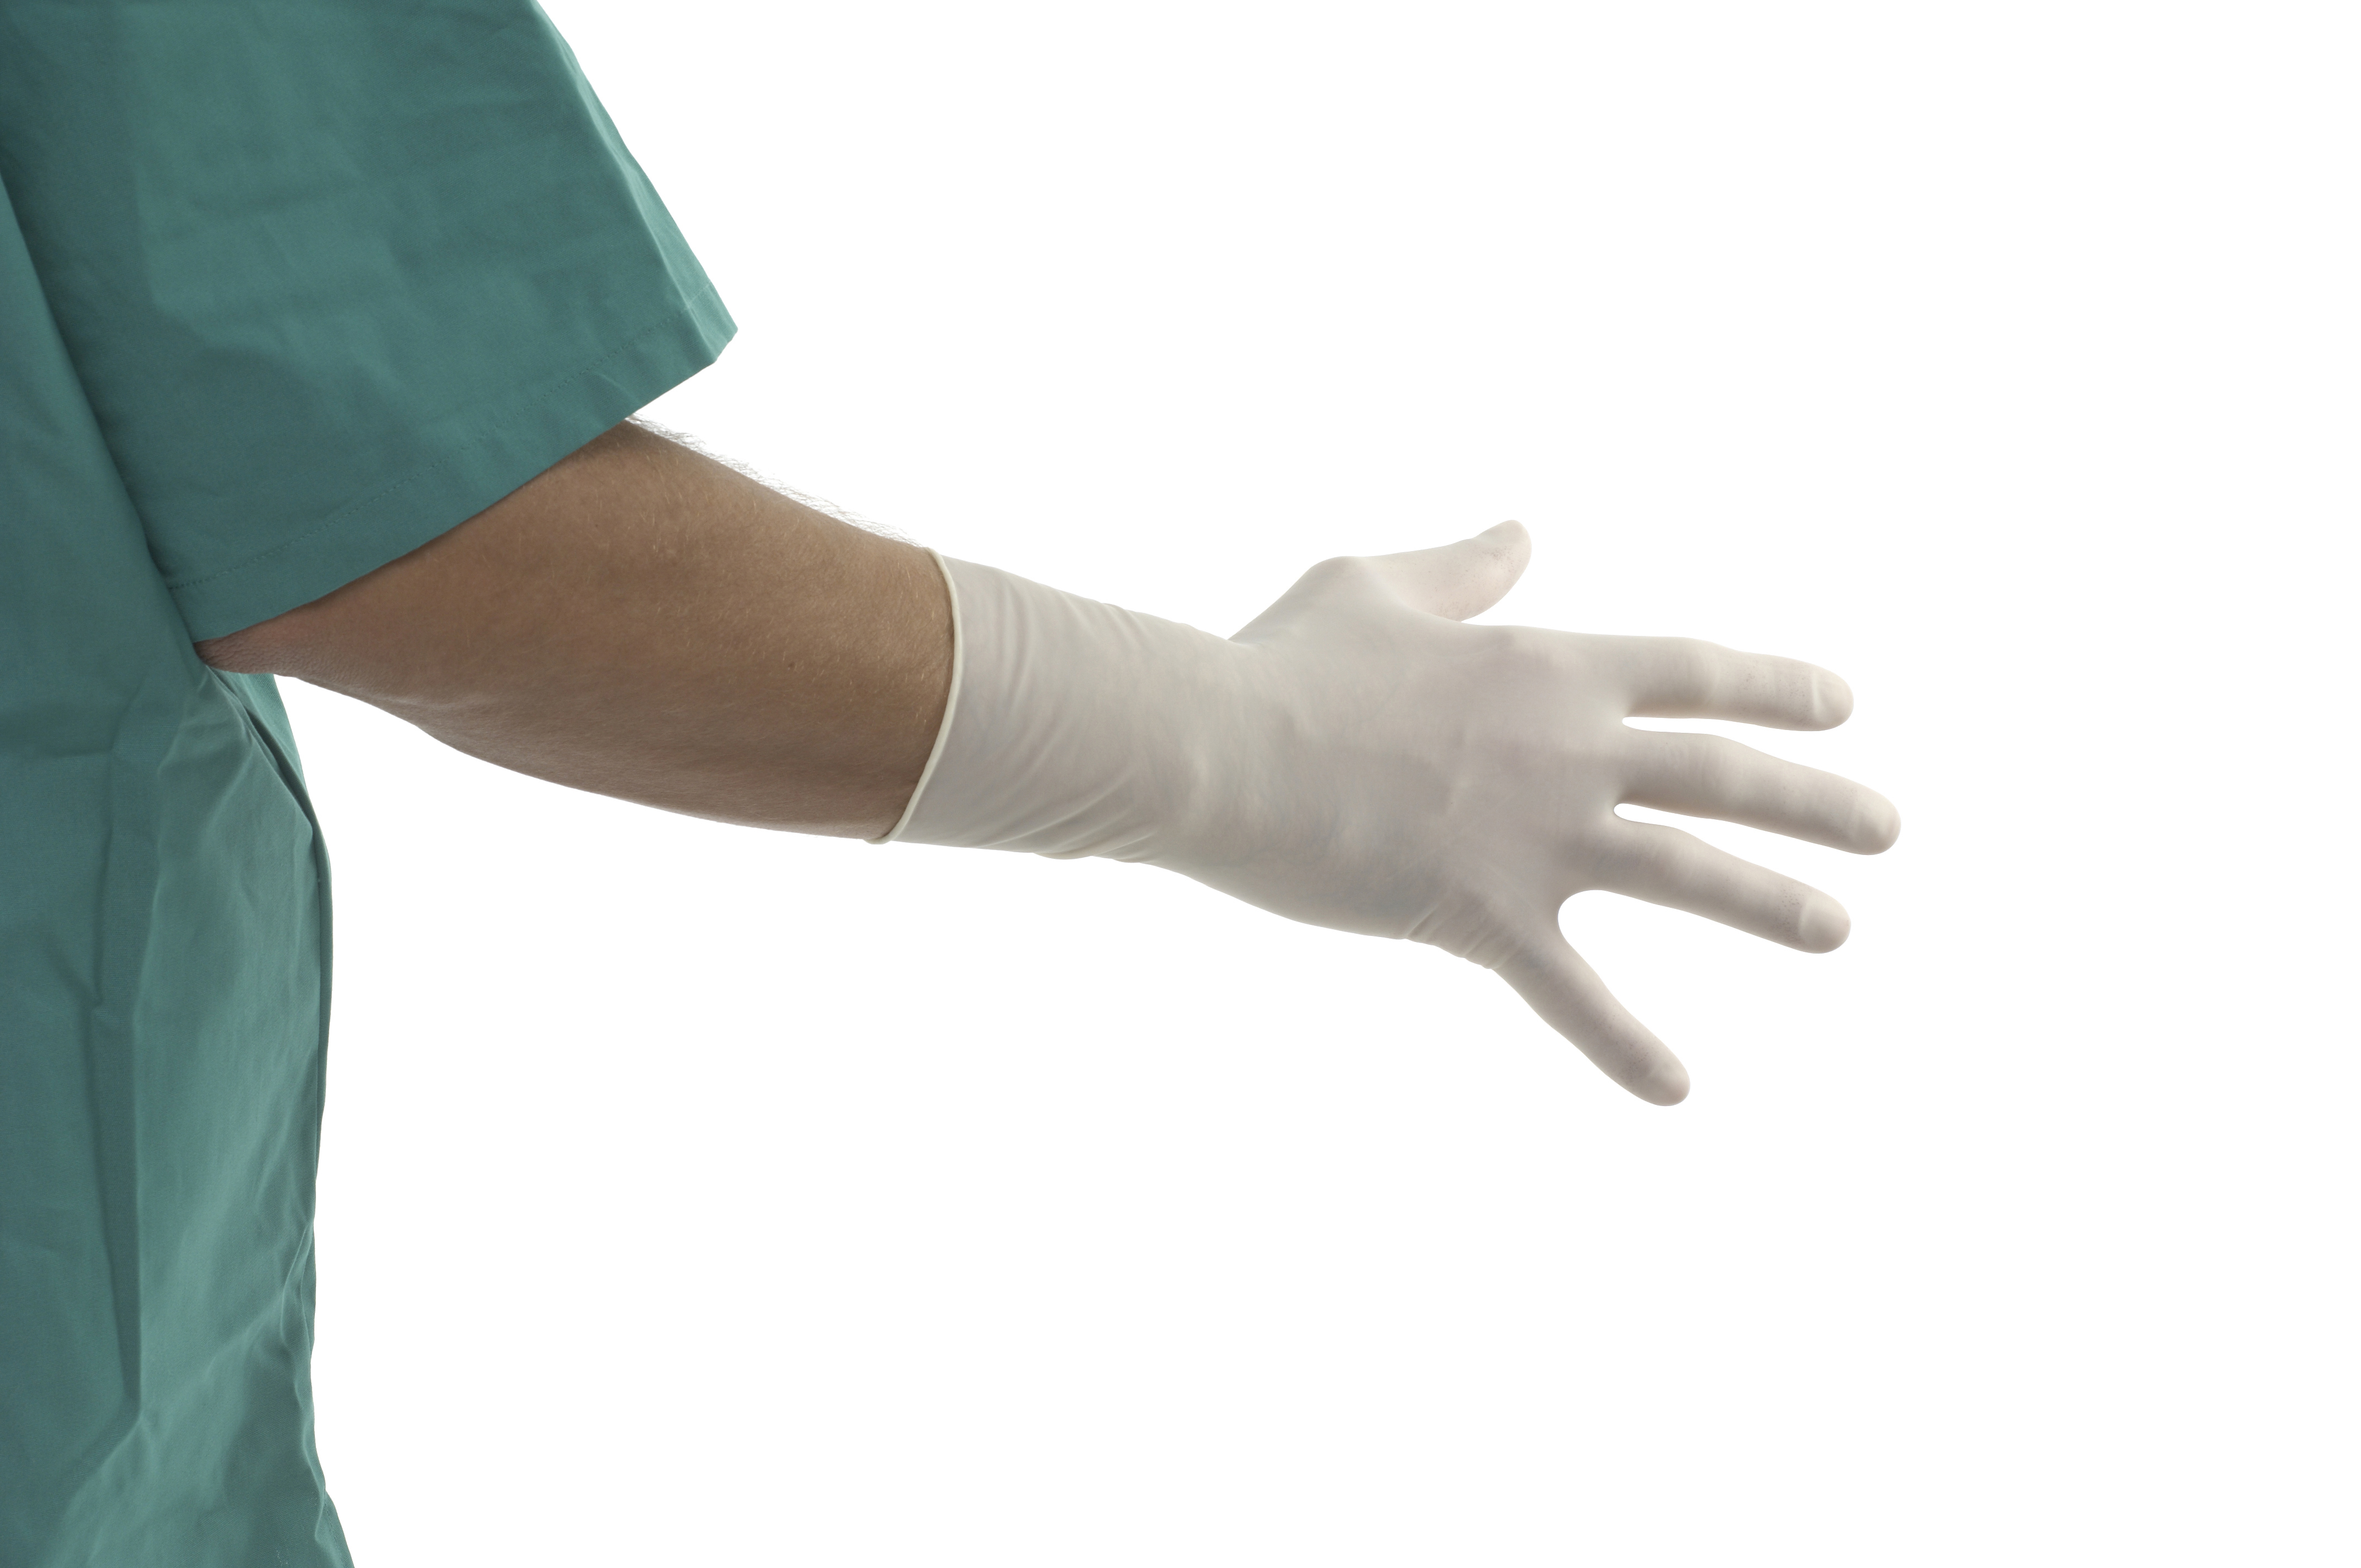 US-KRUTEX Polyisoprene surgical gloves, size 8.0, 25/pk